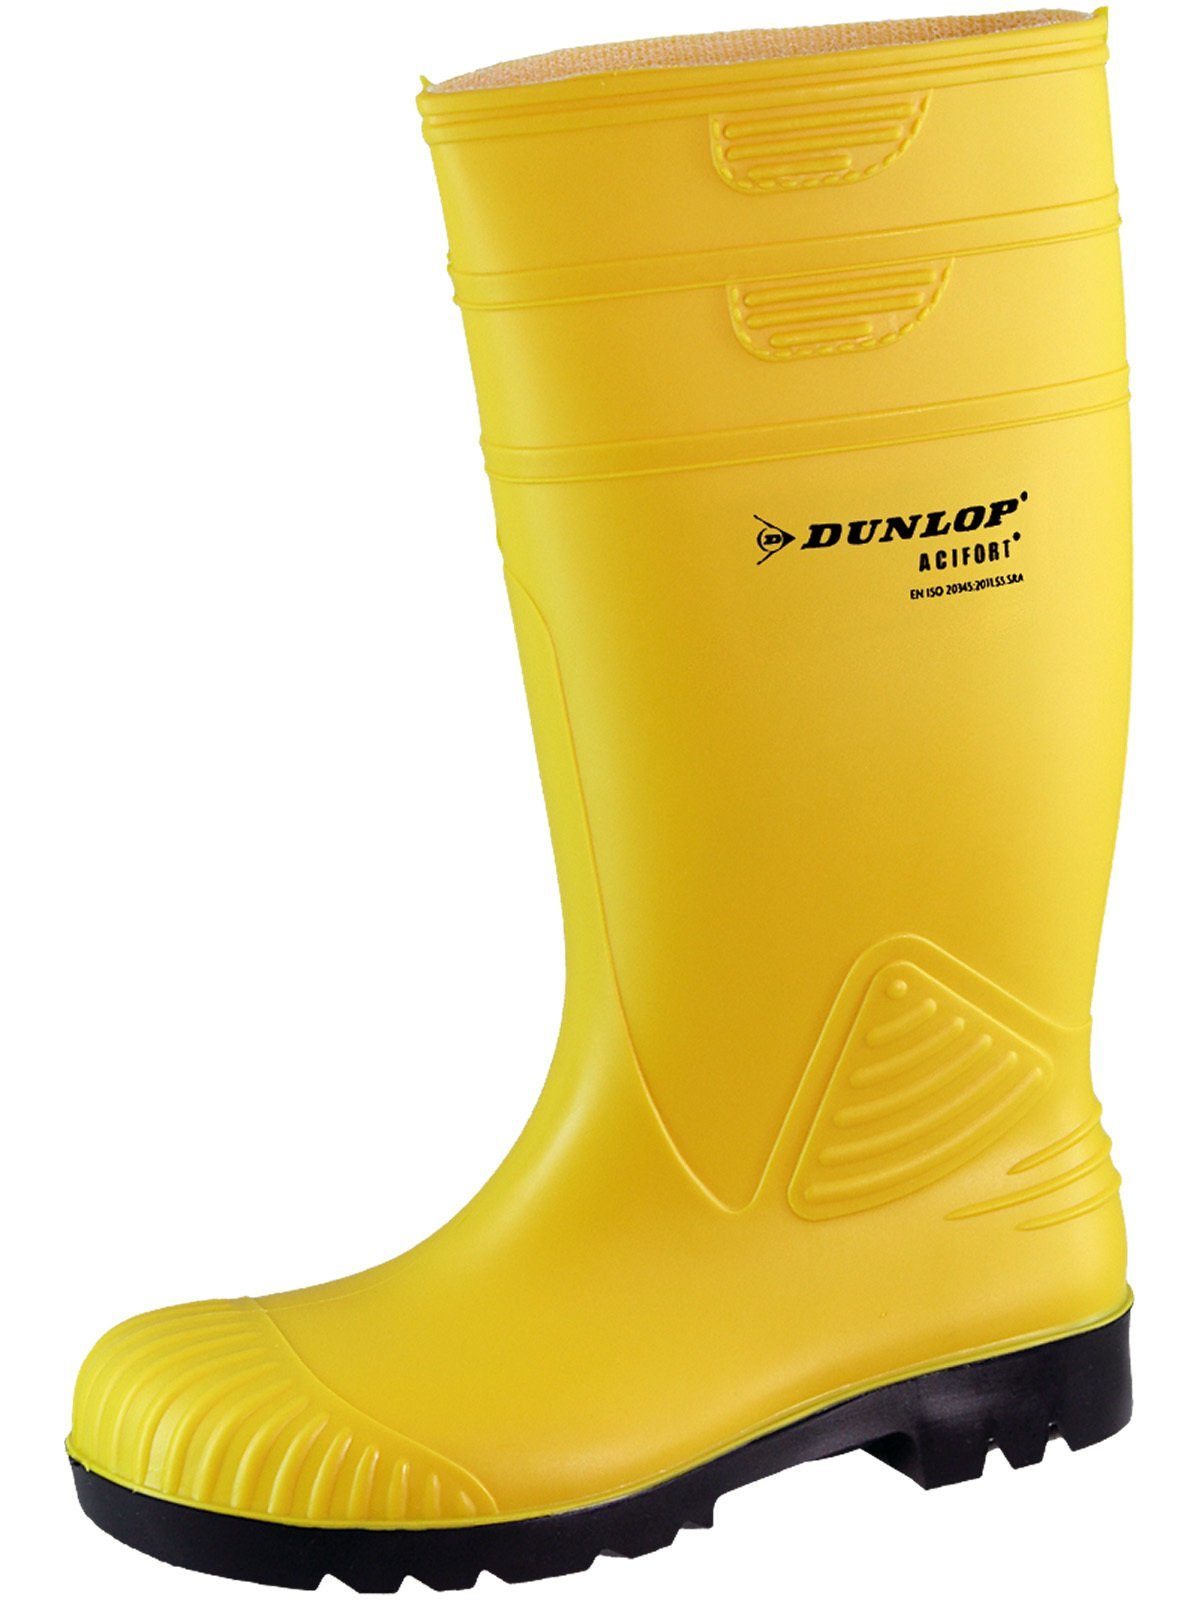 Dunlop_Workwear Dunlop ACIFORT gelb S5 Stiefel